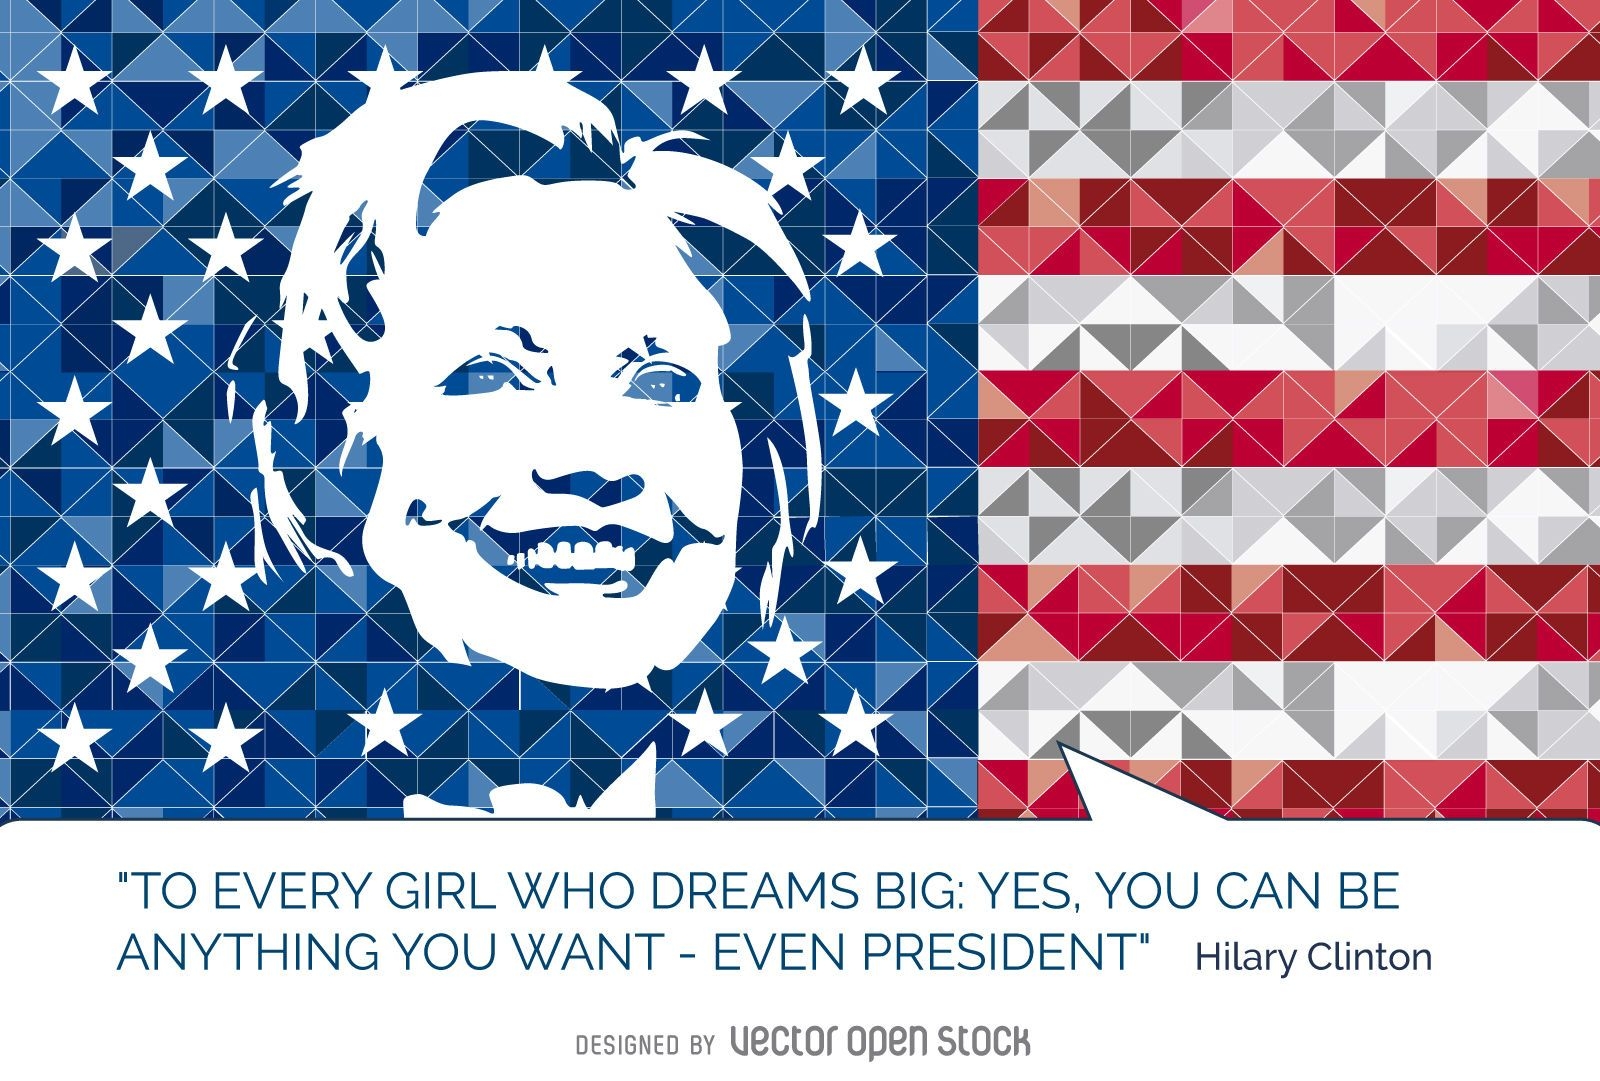 Hillary Clinton cita la bandera estadounidense